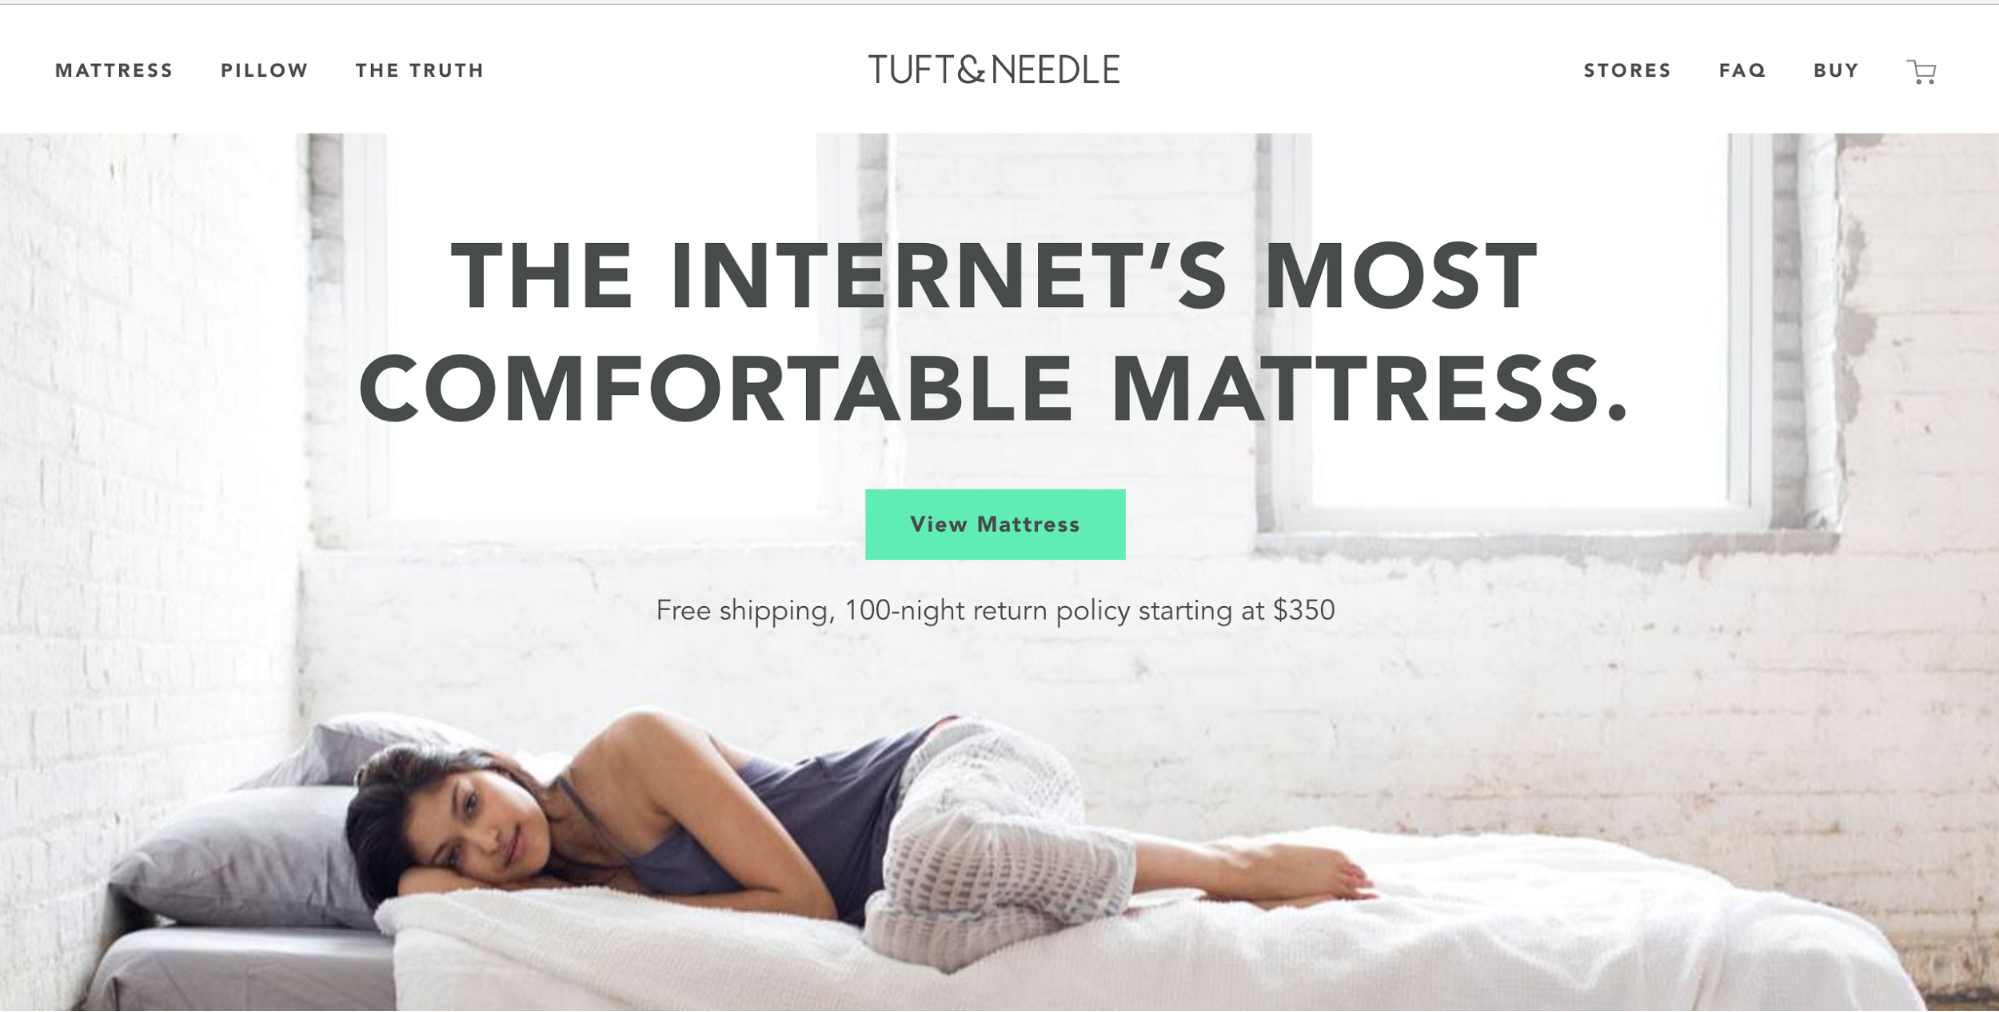 Tuft & Needle marketing claim